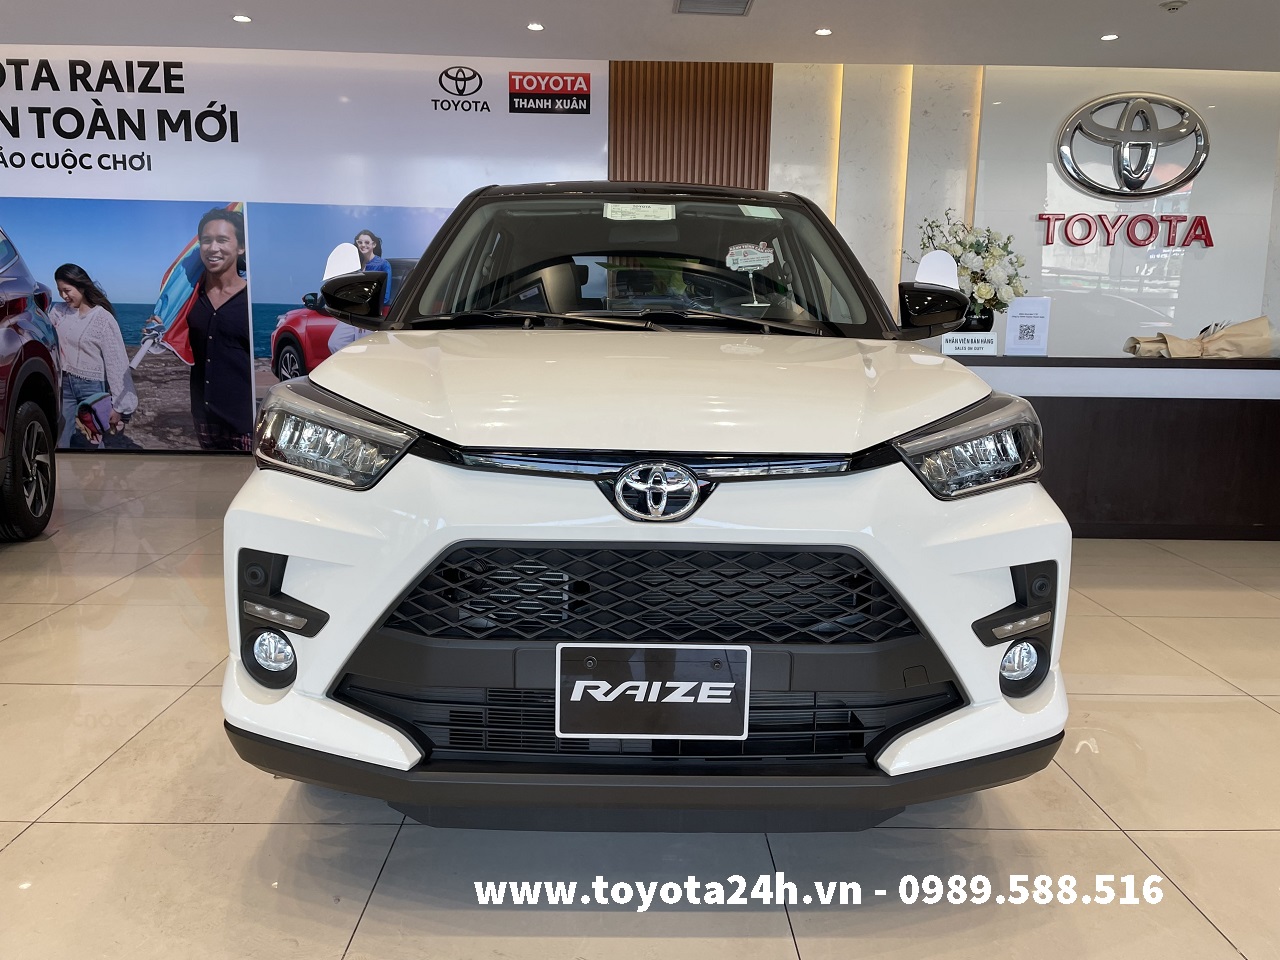 Toyota Raize 2022 với màu trắng nóc đen và bảng giá xe hợp lý là điểm nhấn của chiếc xe này. Được trang bị đầy đủ các tính năng tiên tiến và tiết kiệm nhiên liệu, Toyota Raize sẽ là lựa chọn đáng cân nhắc cho những ai đang tìm kiếm một chiếc xe đáng mua.